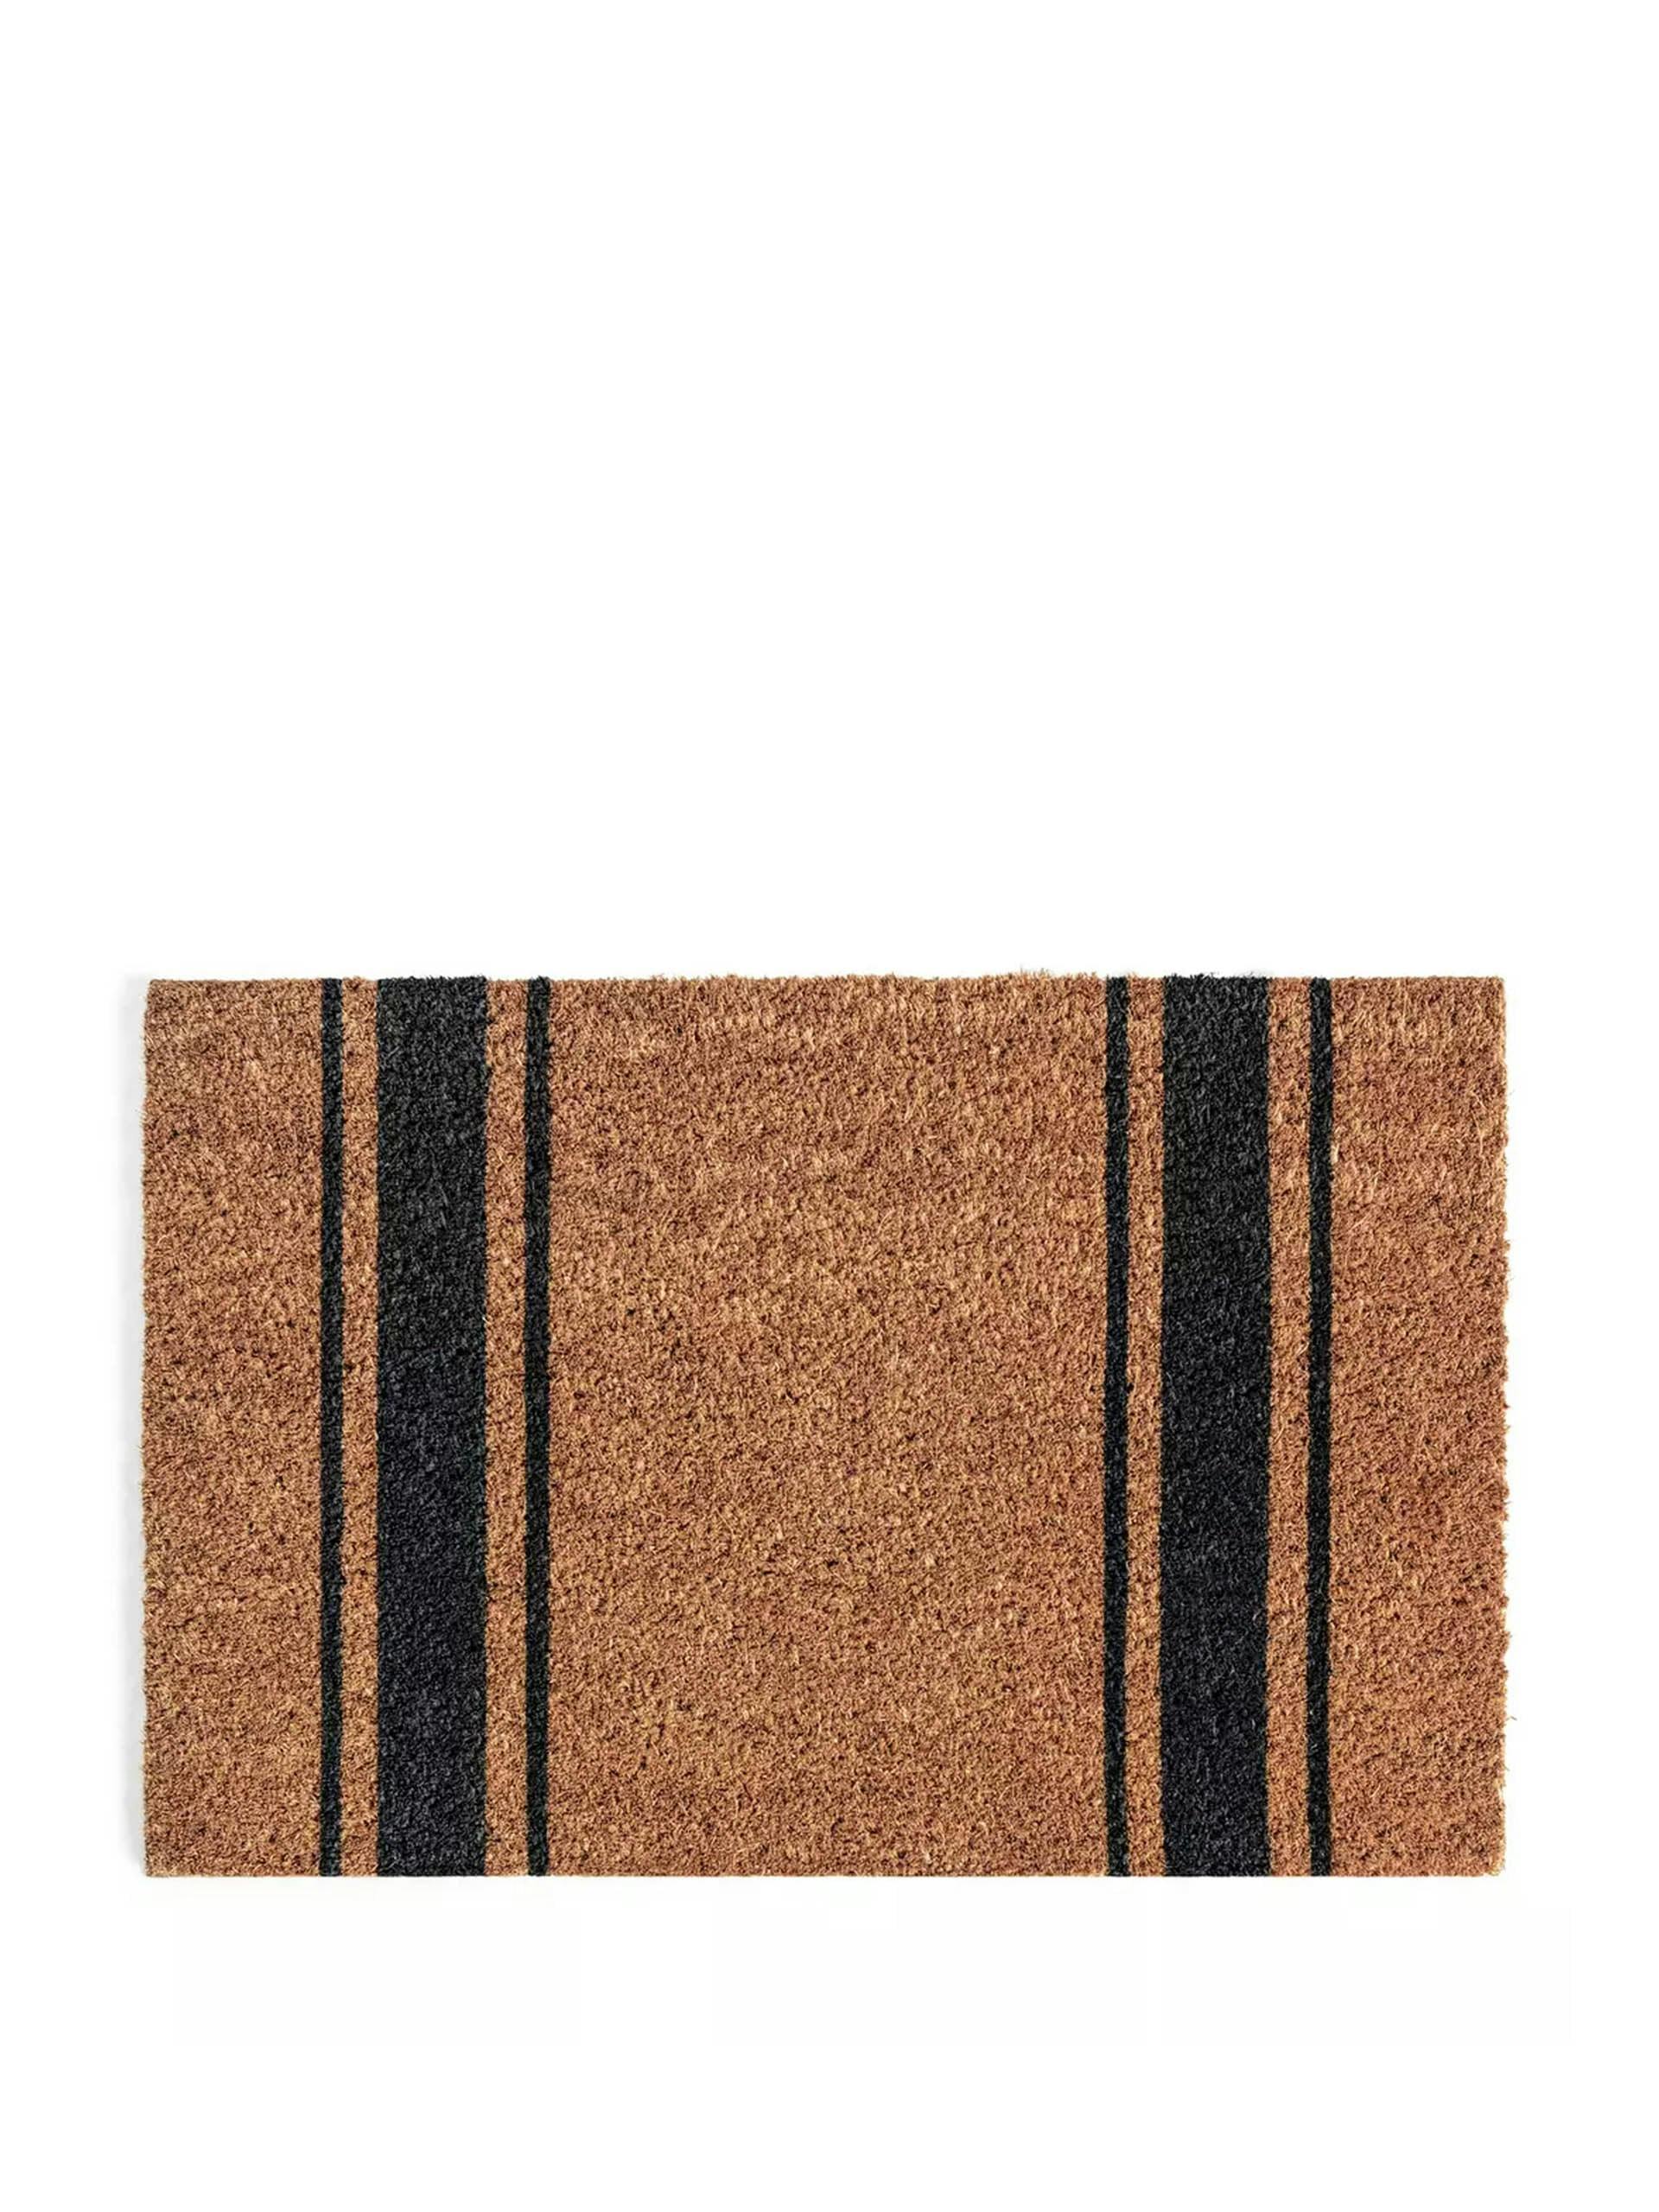 Black and brown stripe coir doormat